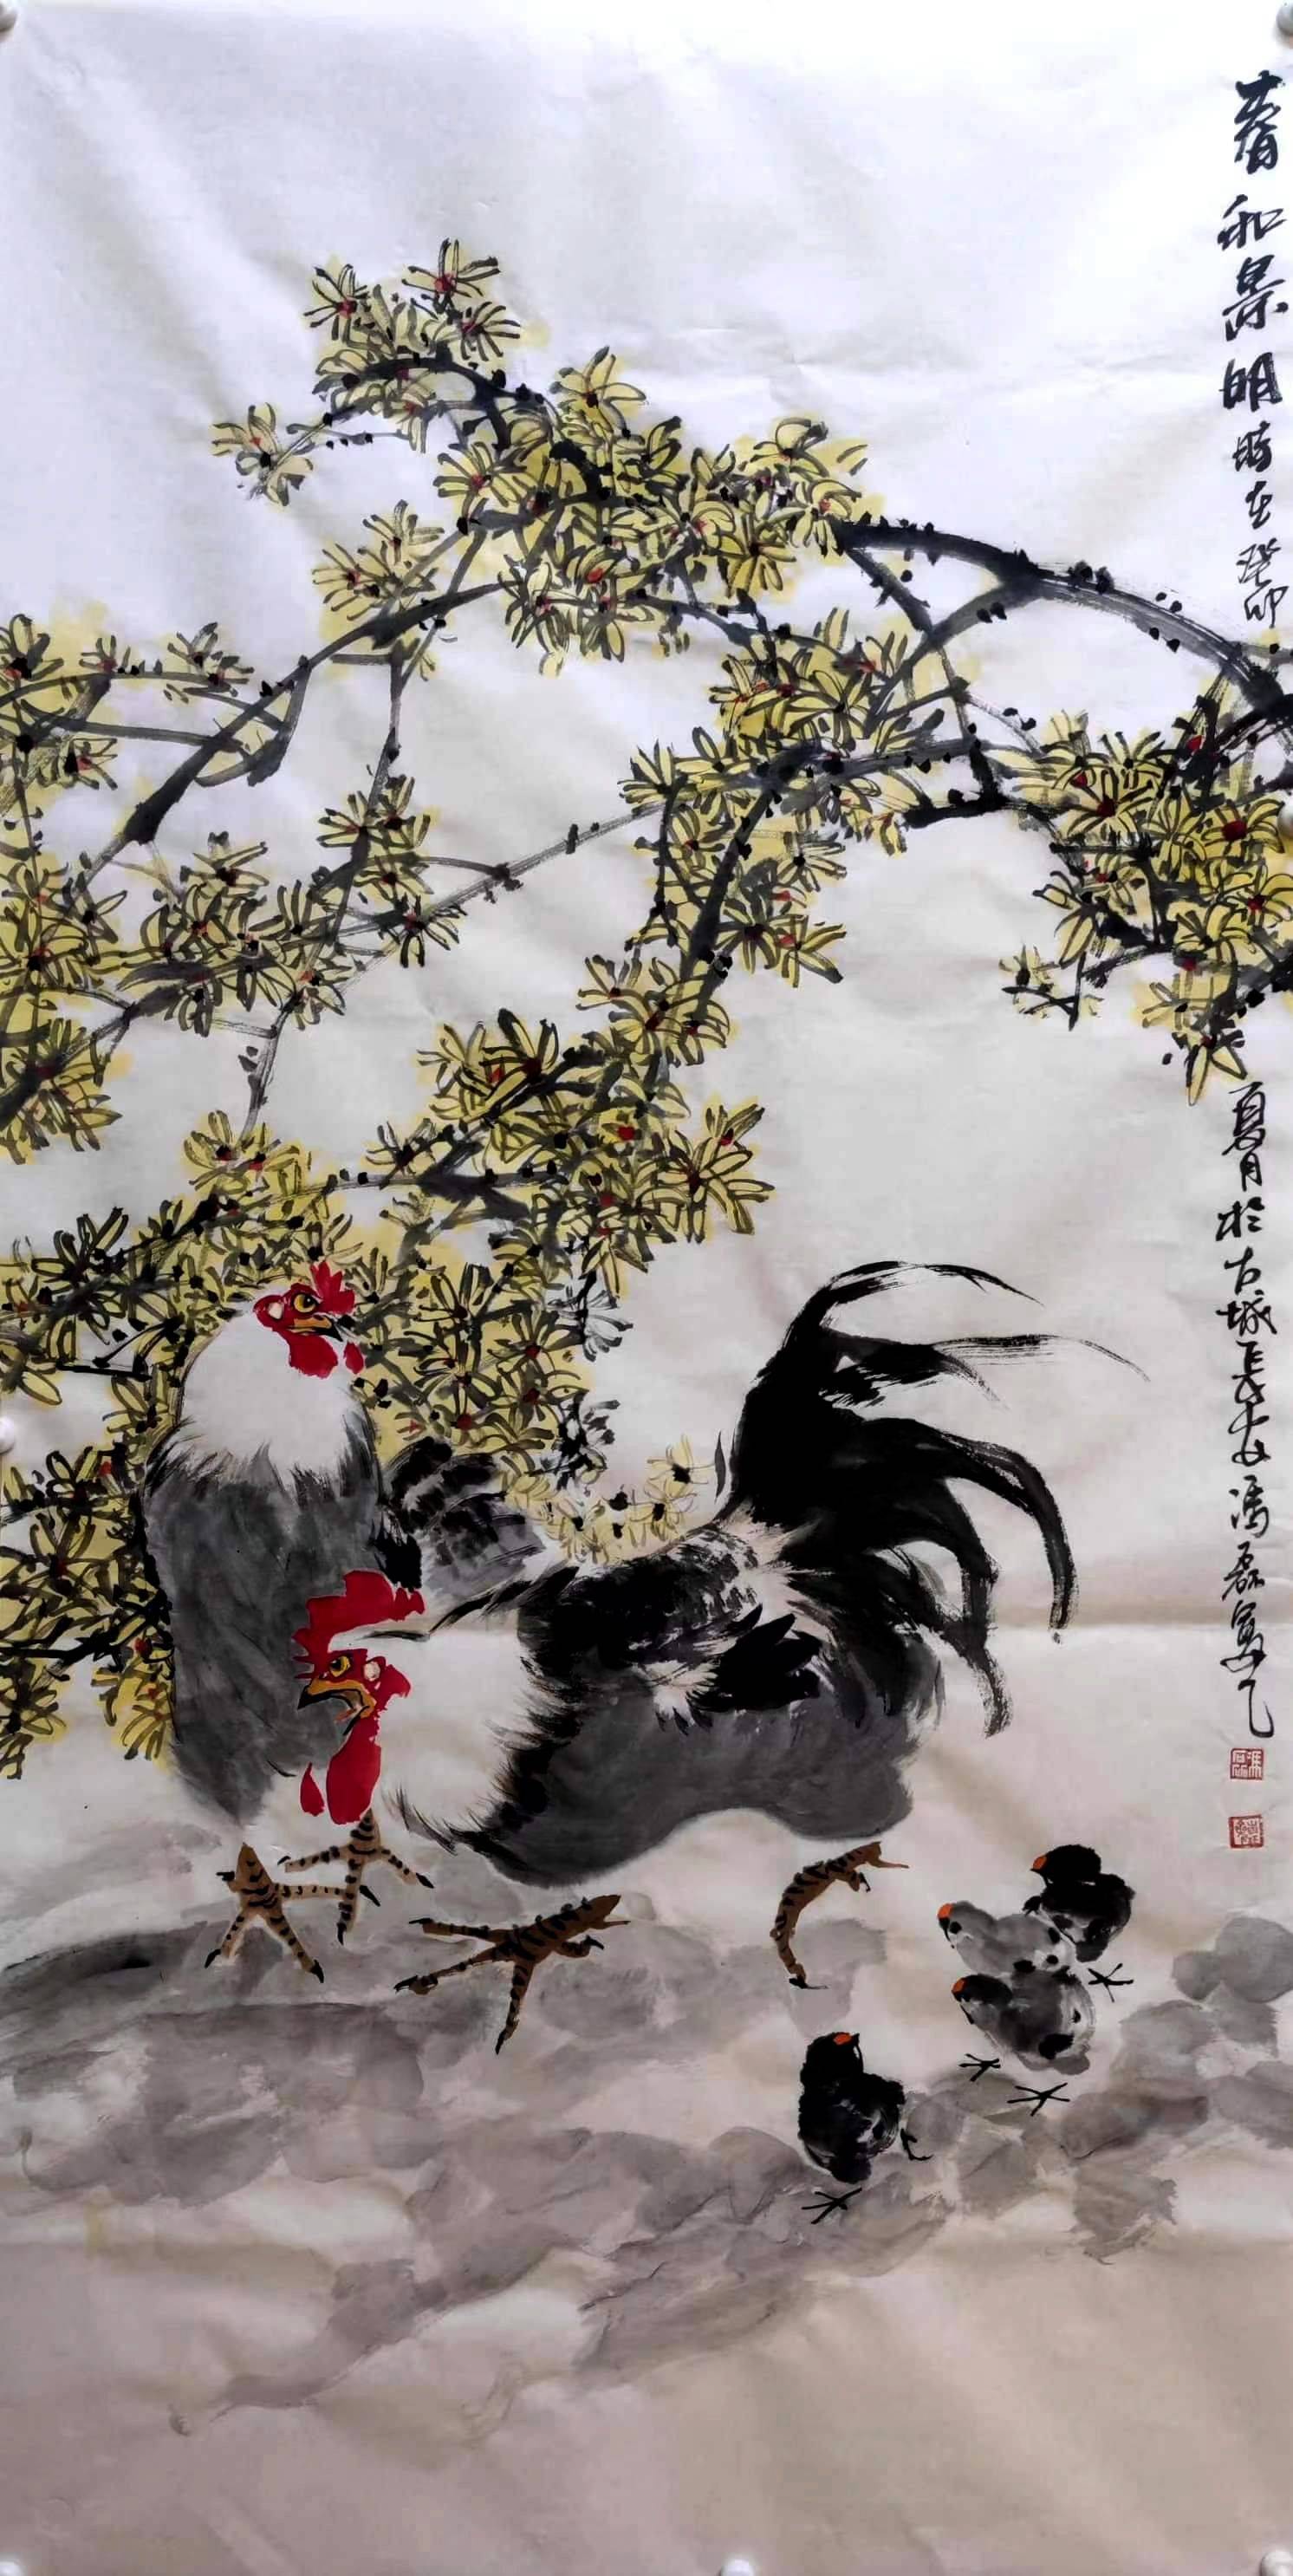 鸡鸣长安见精神——冯磊国画鸡作品欣赏(一)